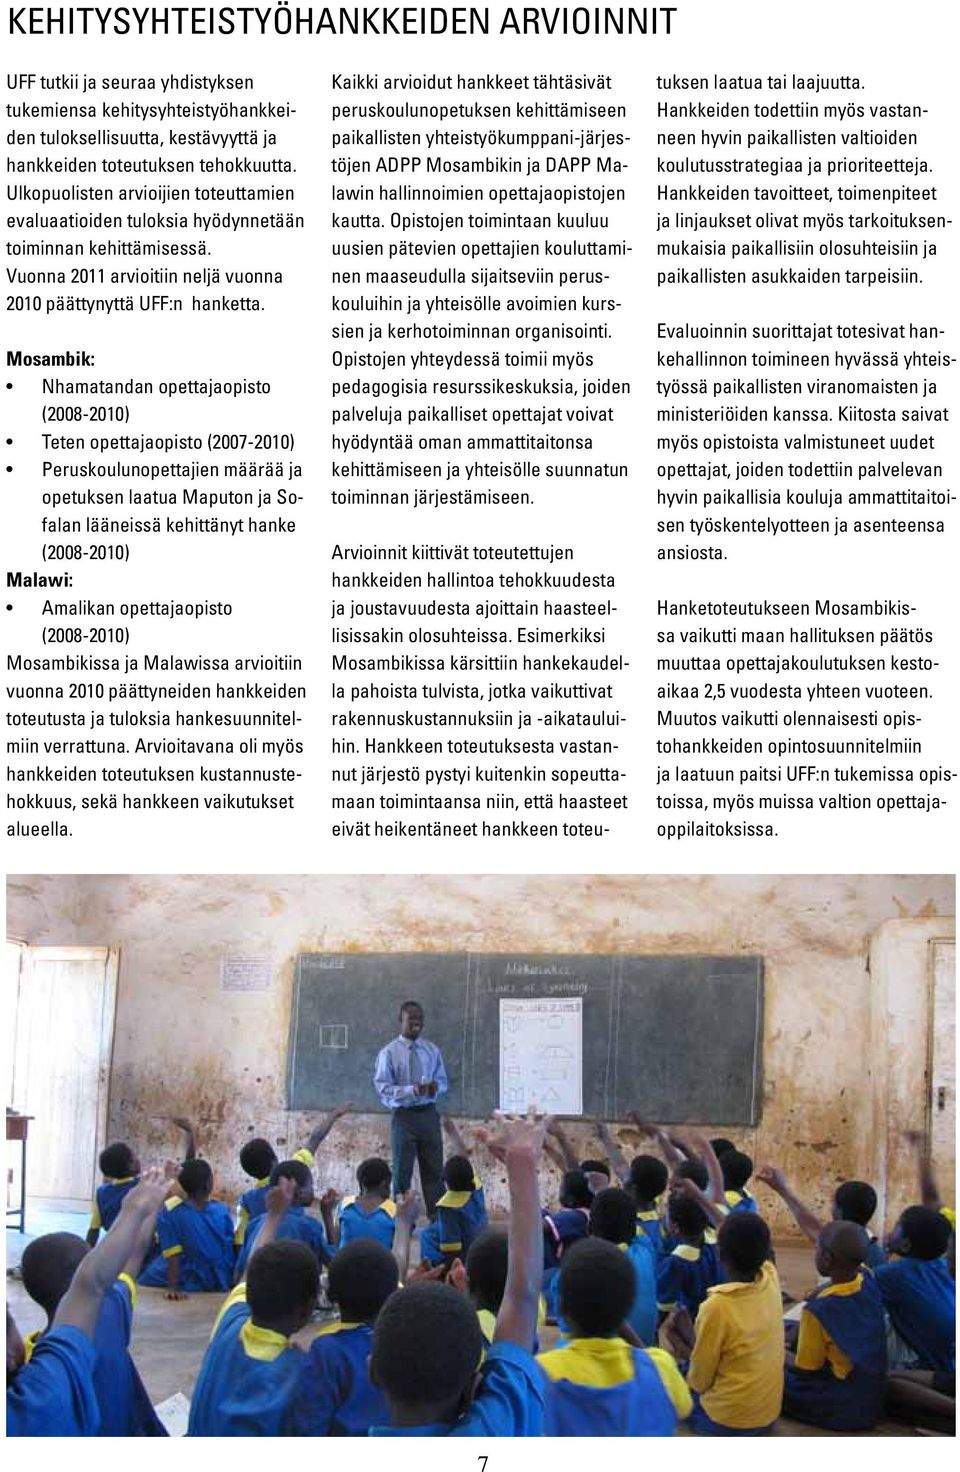 Mosambik: Nhamatandan opettajaopisto (2008-2010) Teten opettajaopisto (2007-2010) Peruskoulunopettajien määrää ja opetuksen laatua Maputon ja Sofalan lääneissä kehittänyt hanke (2008-2010) Malawi: